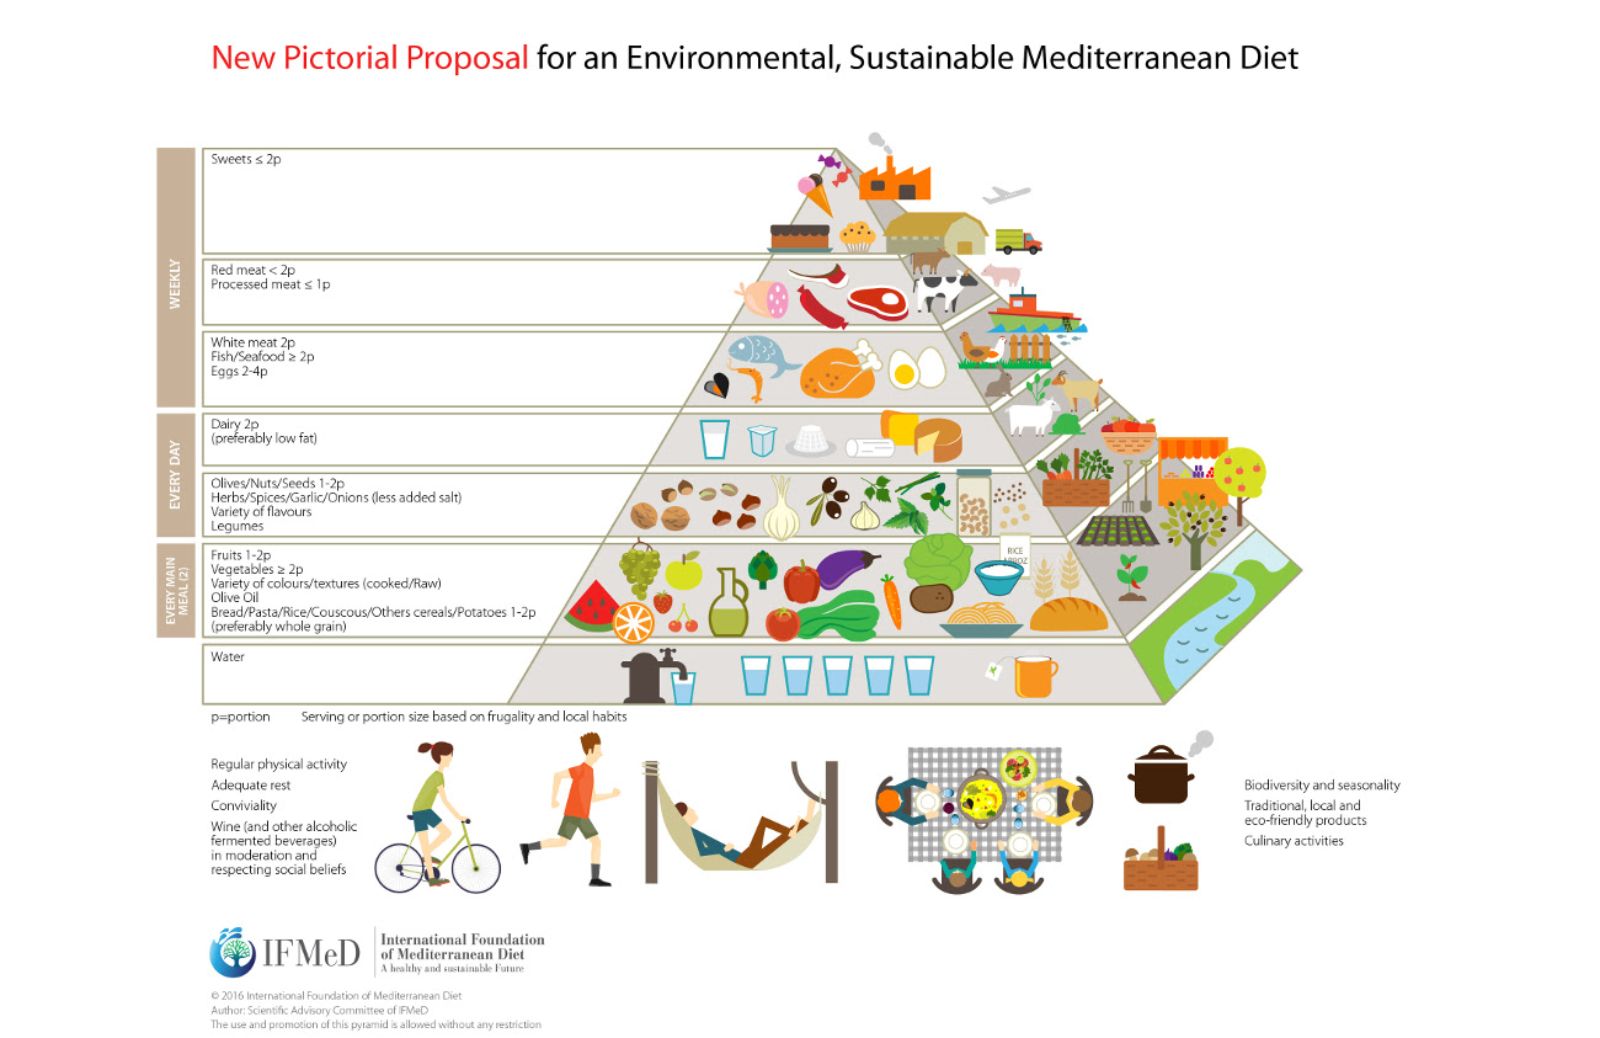 La piramide della Dieta Mediterranea sostenibile